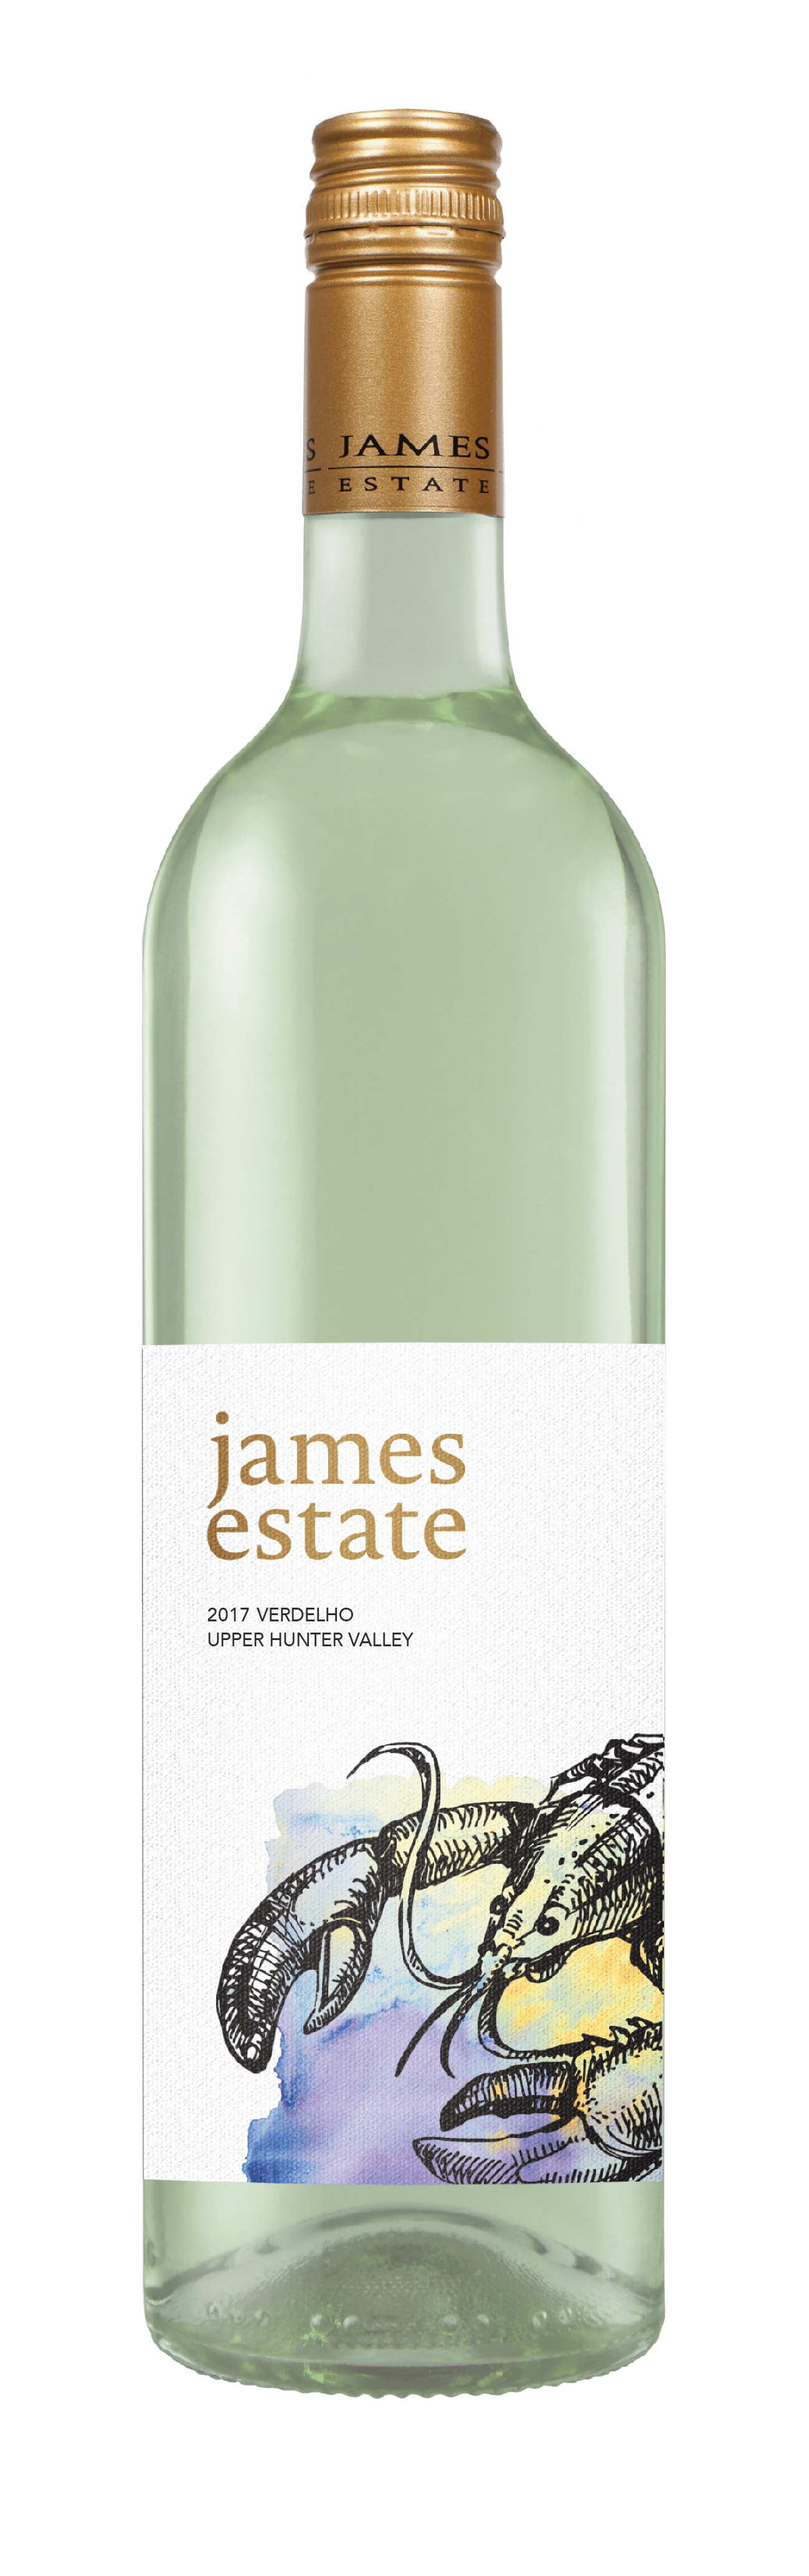 James Estate Single Vineyard Estate 2017 Verdelho